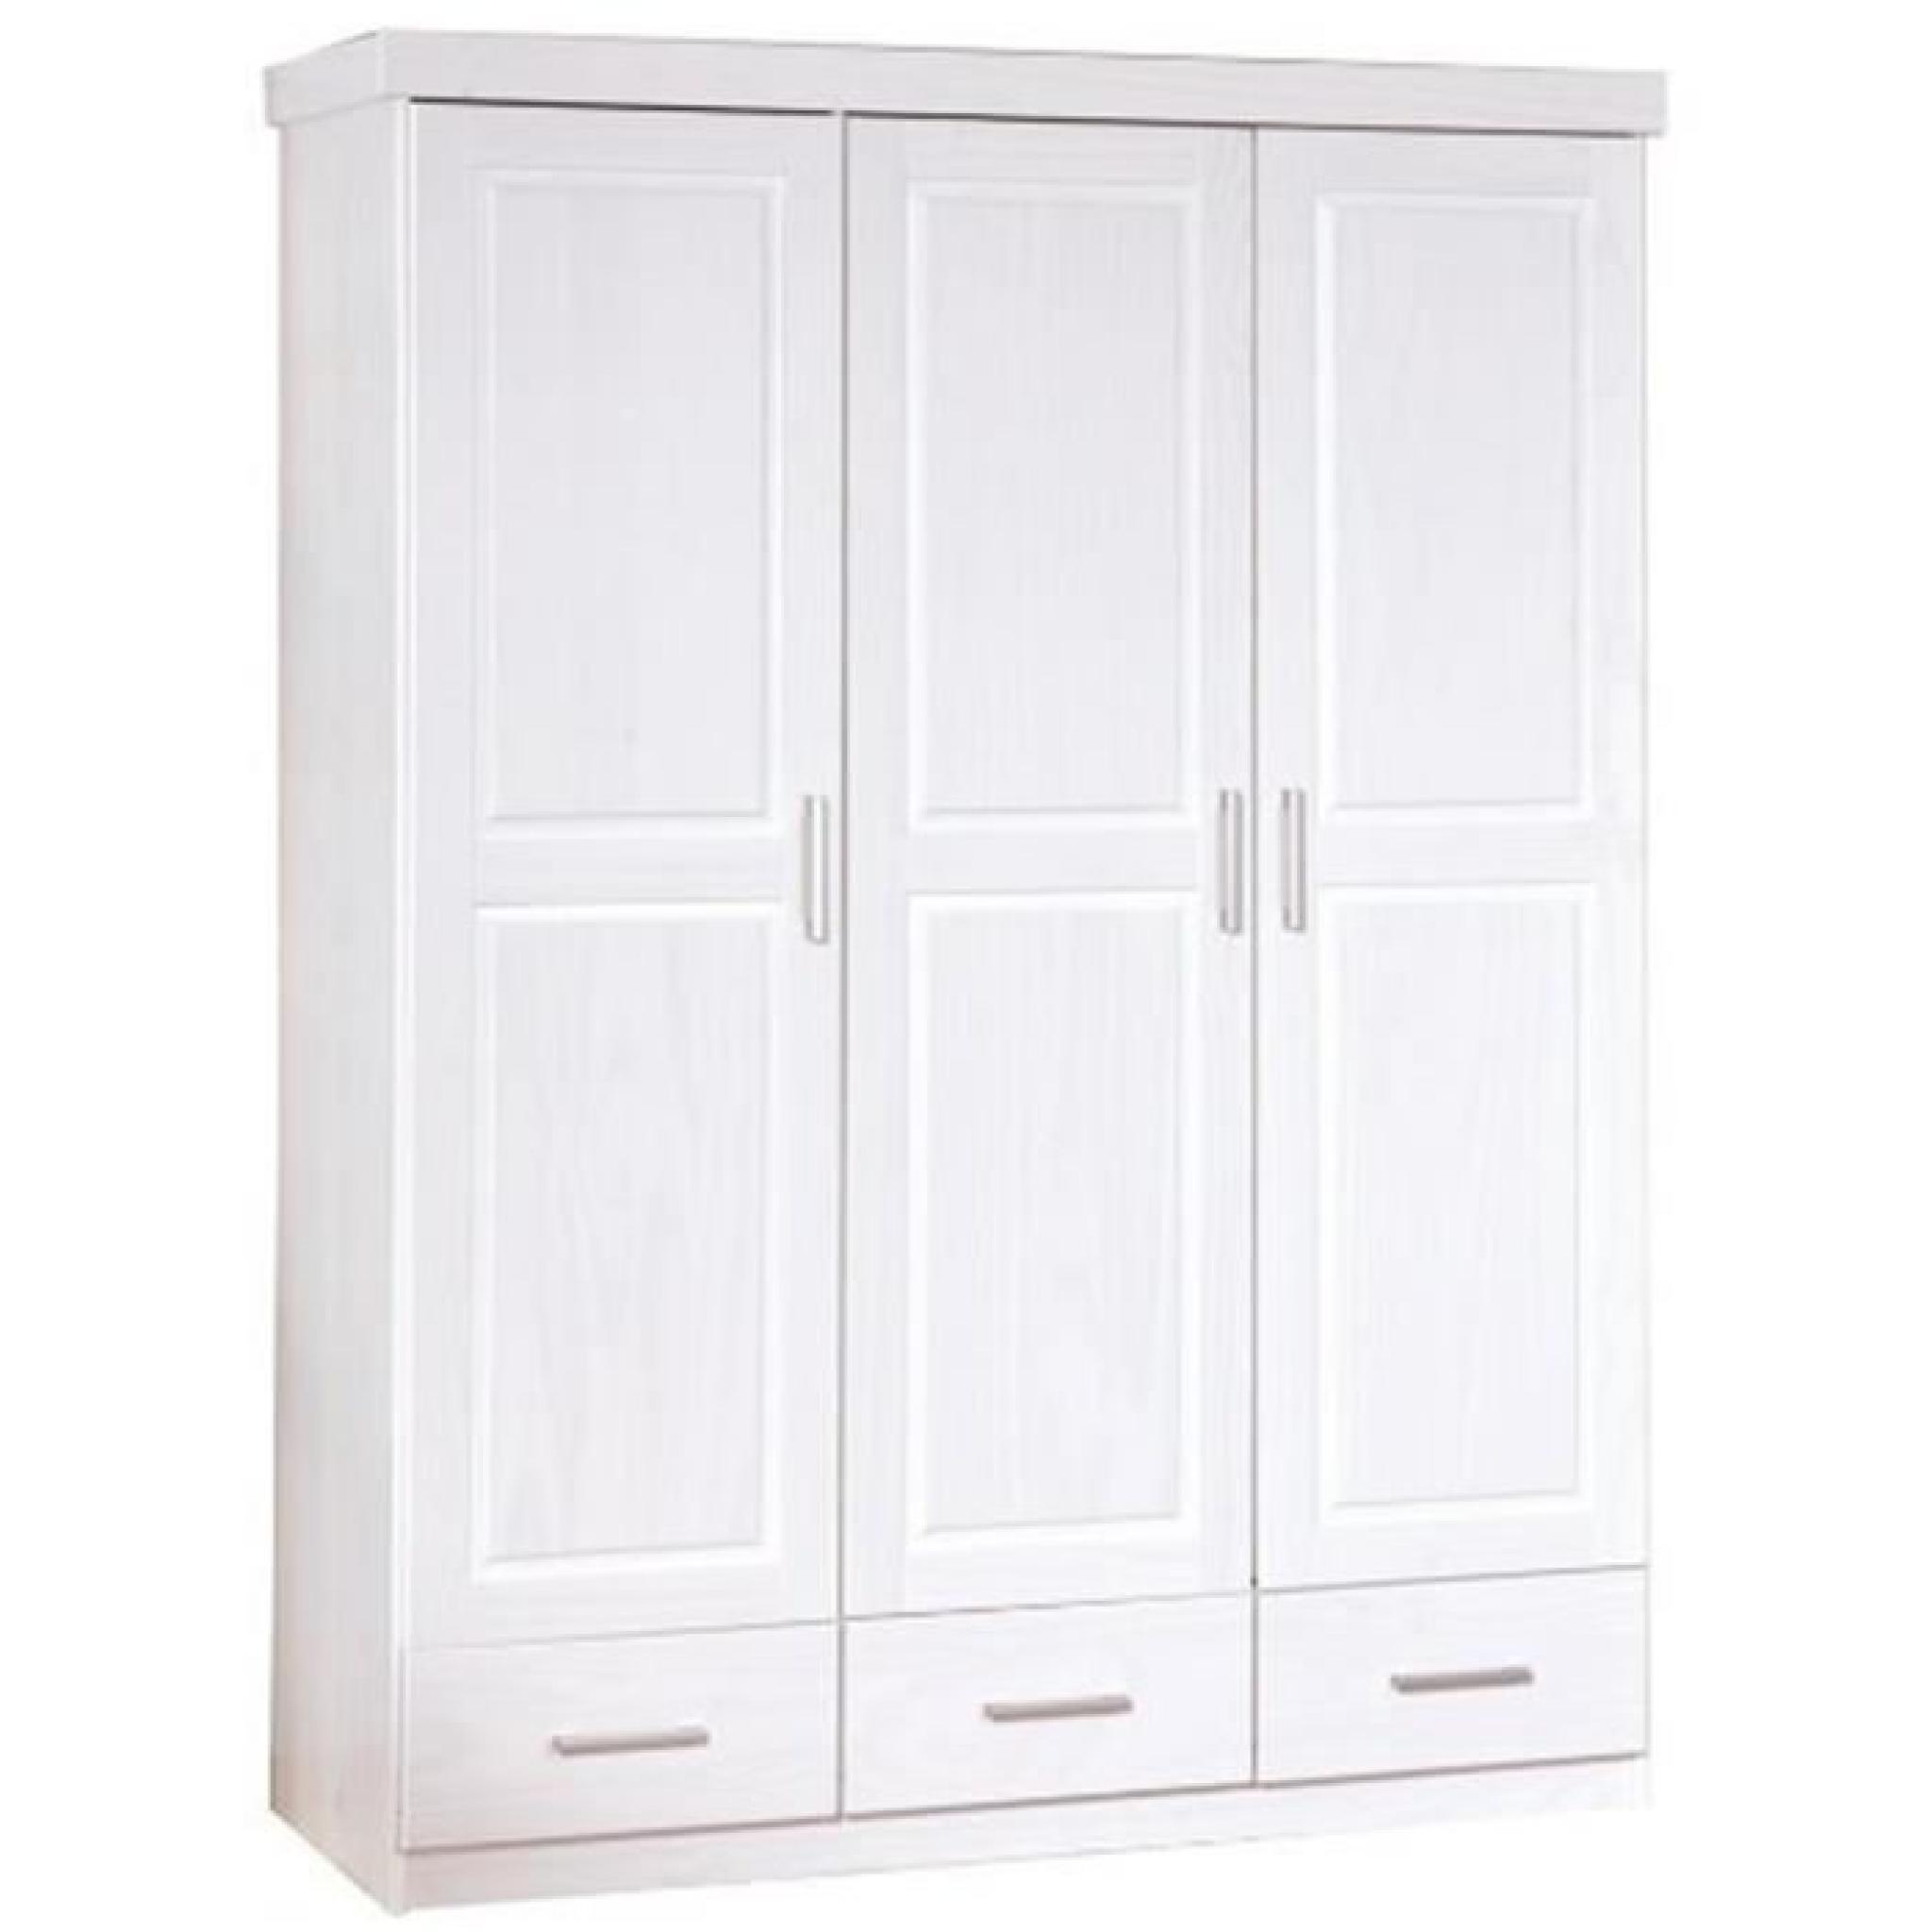 Armoire avec 3 portes et 3 tiroirs blanc, Dim :...